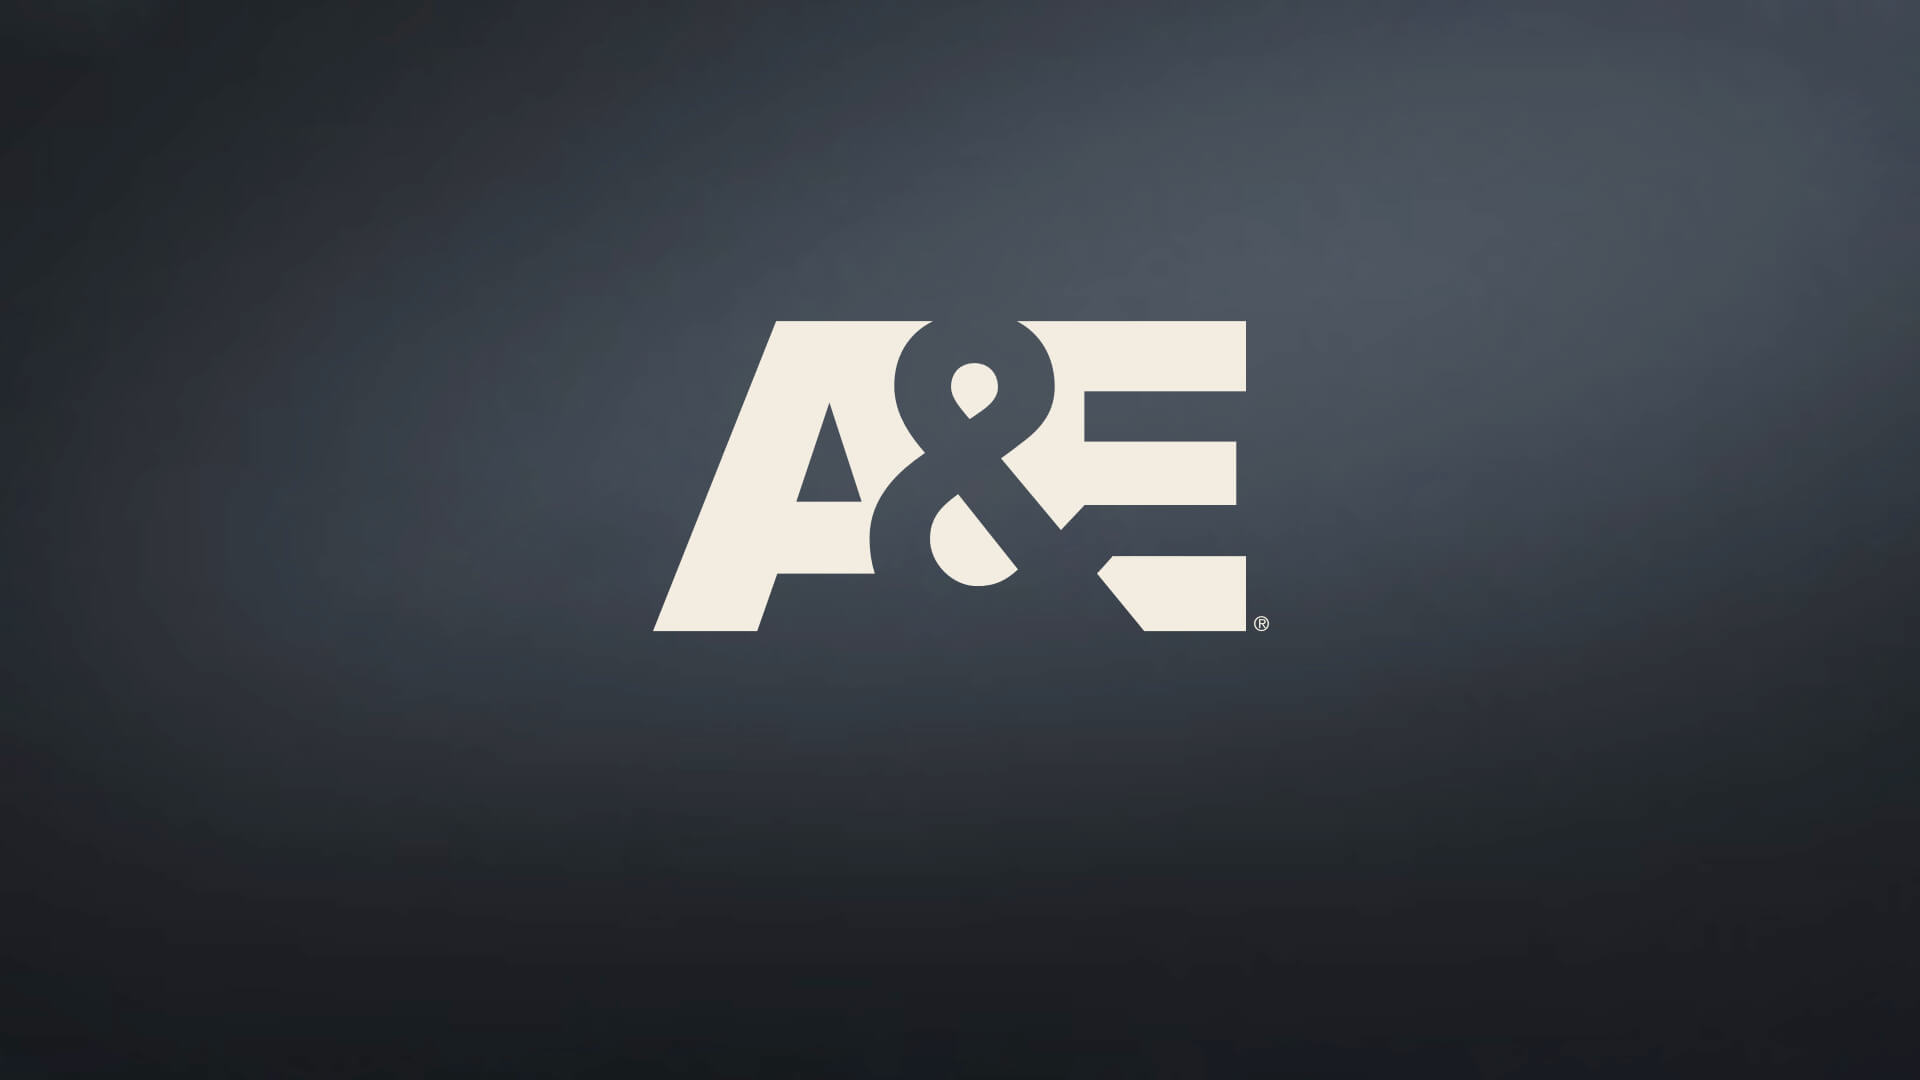  A&E A&E 